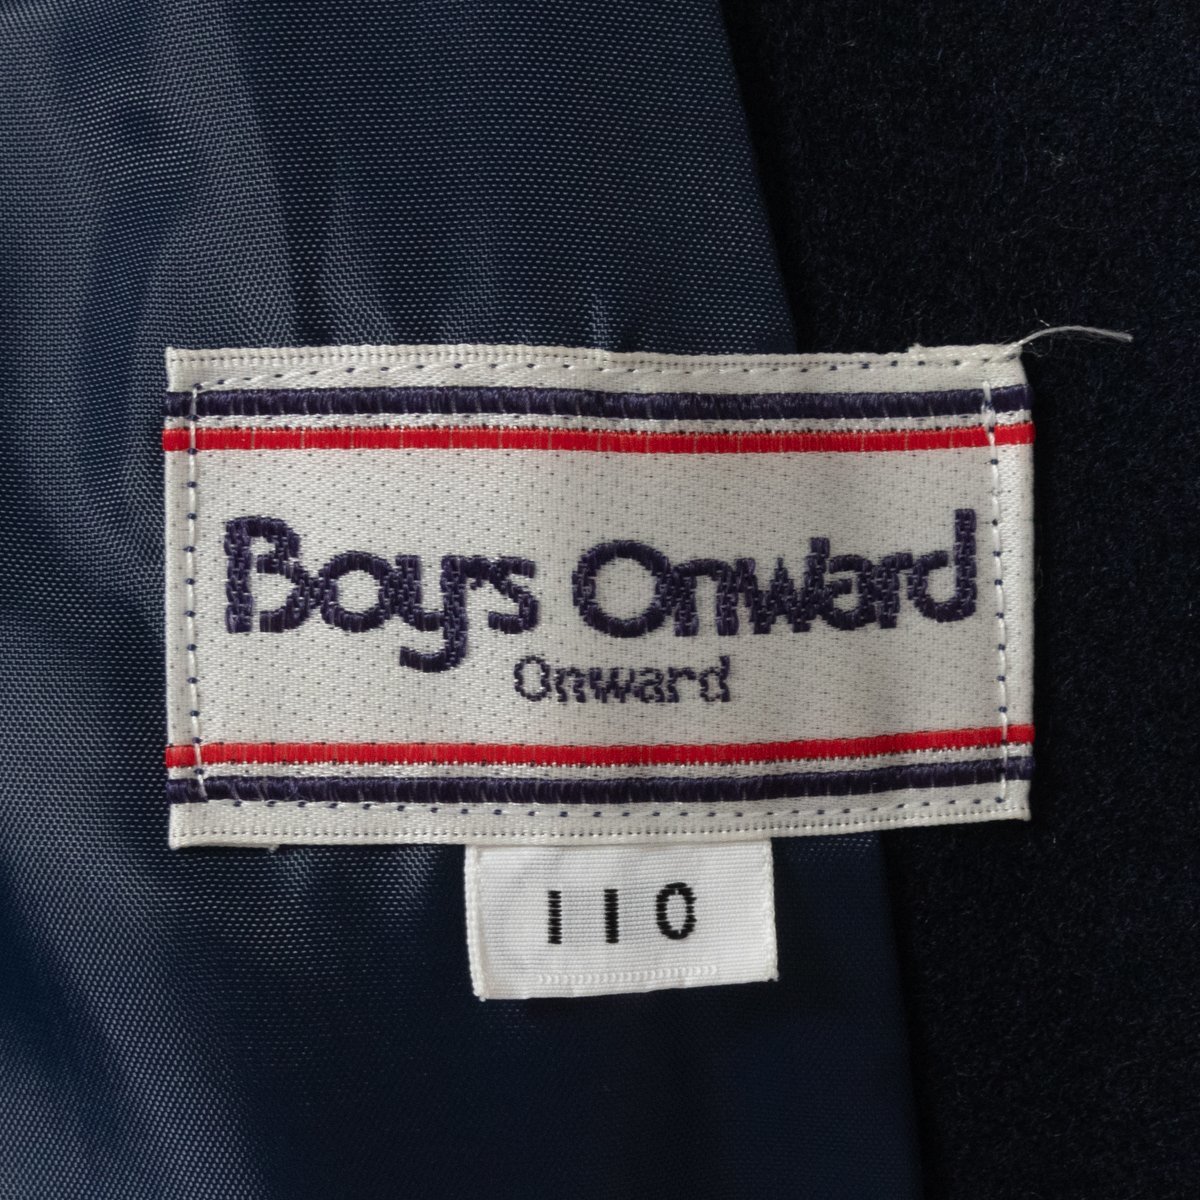 Boy's Onward ... On ...  ребенок ...  детский   мужчина    ...  шерсть  пиджак   военно-морской флот   синий  110cm ... кожа  ... ... ...  весна   Зима 